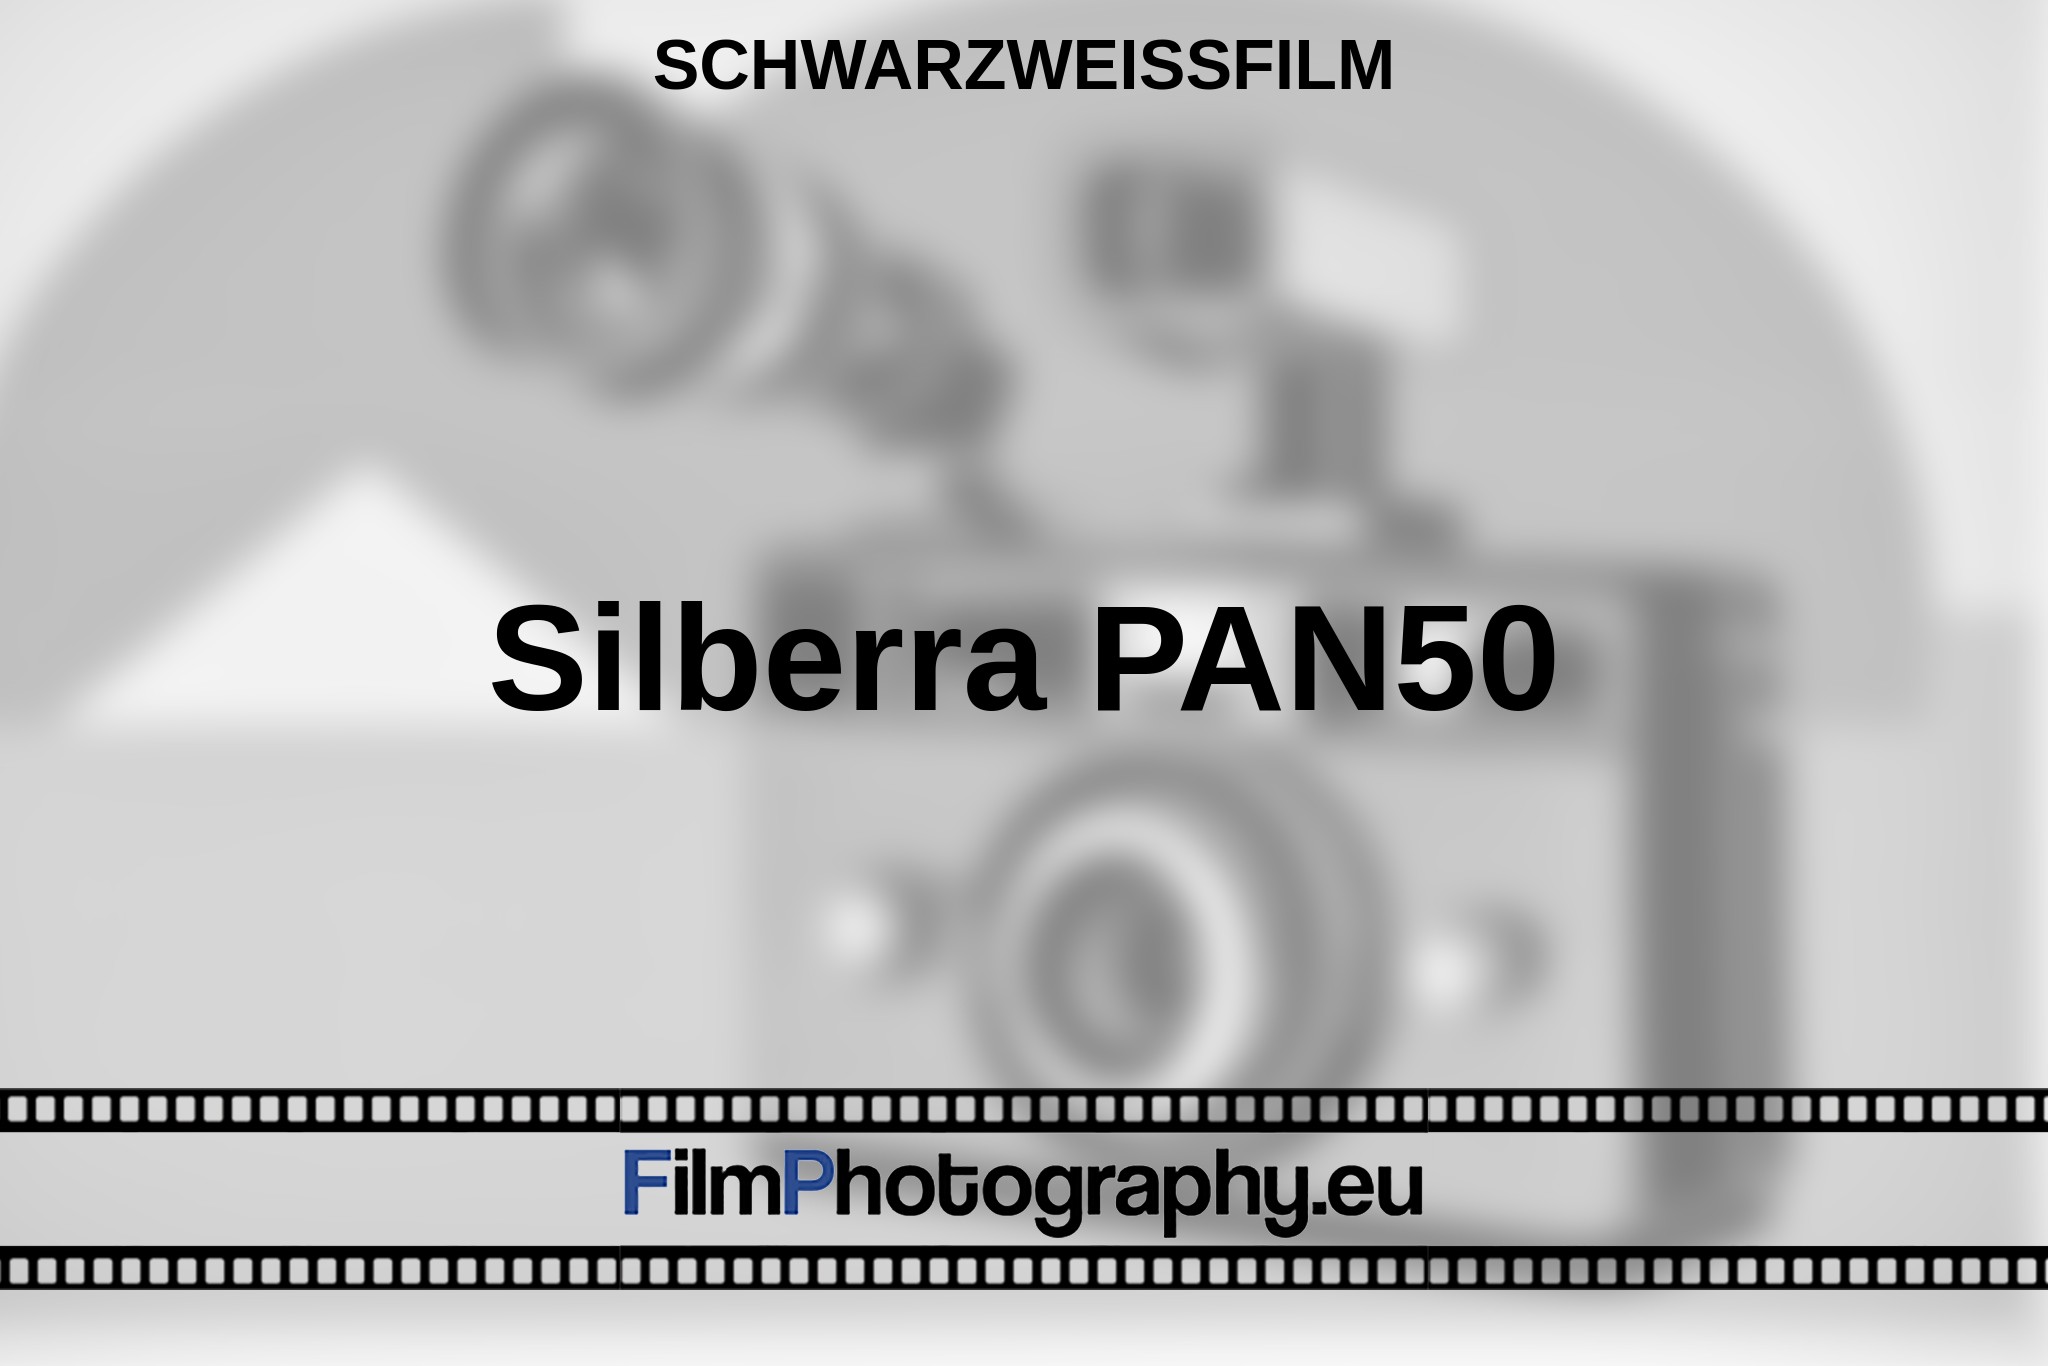 silberra-pan50-schwarzweißfilm-bnv.jpg